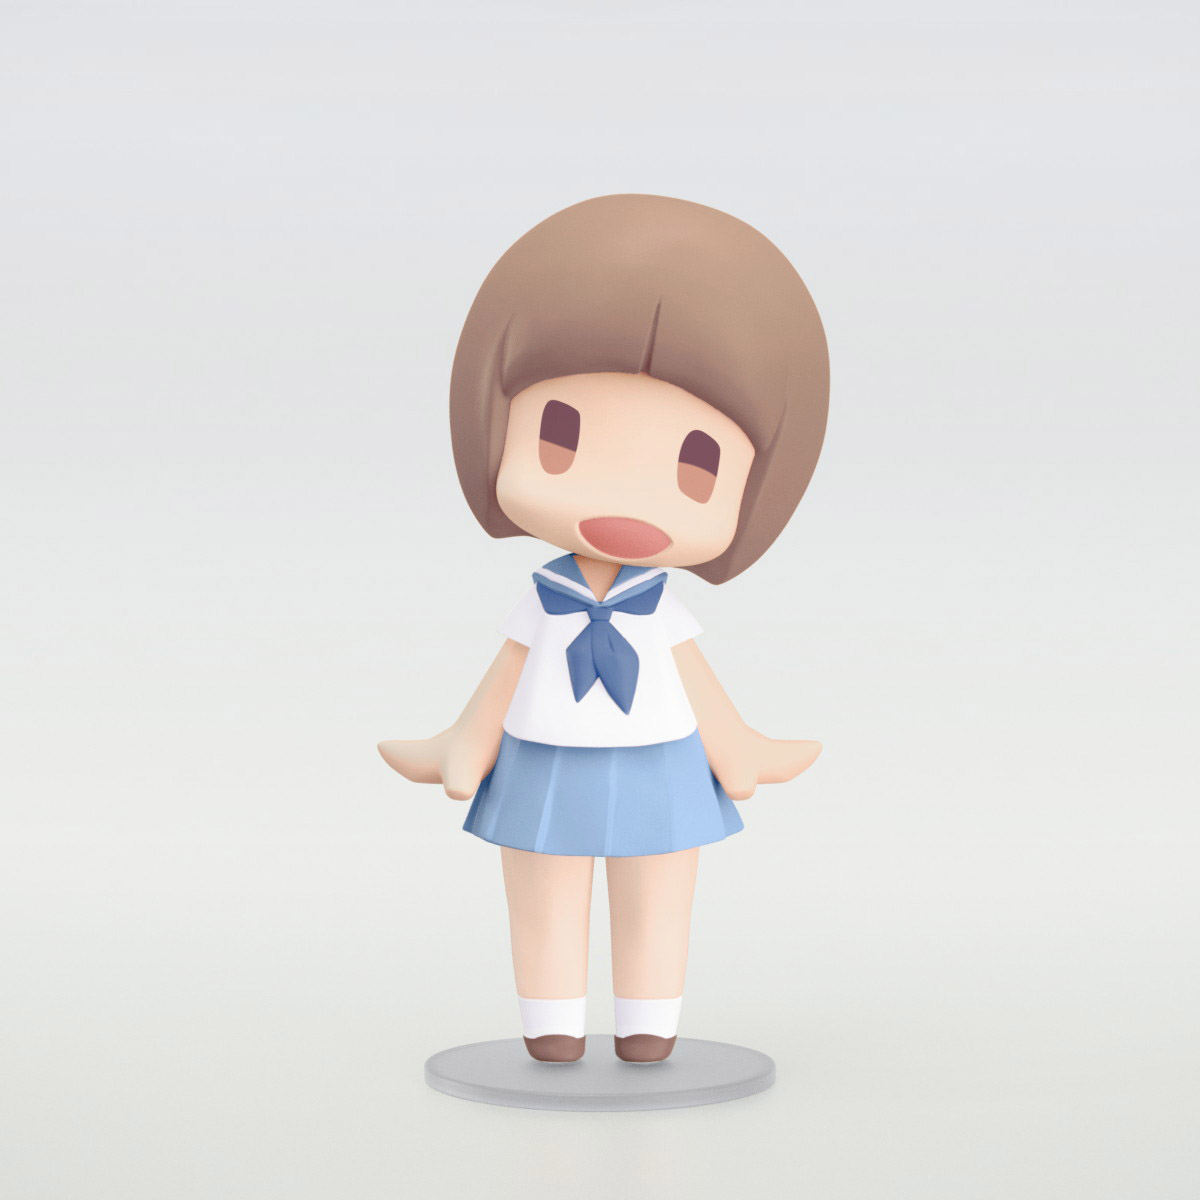 キルラキル「HELLO! GOOD SMILE 満艦飾マコ」のフィギュア画像